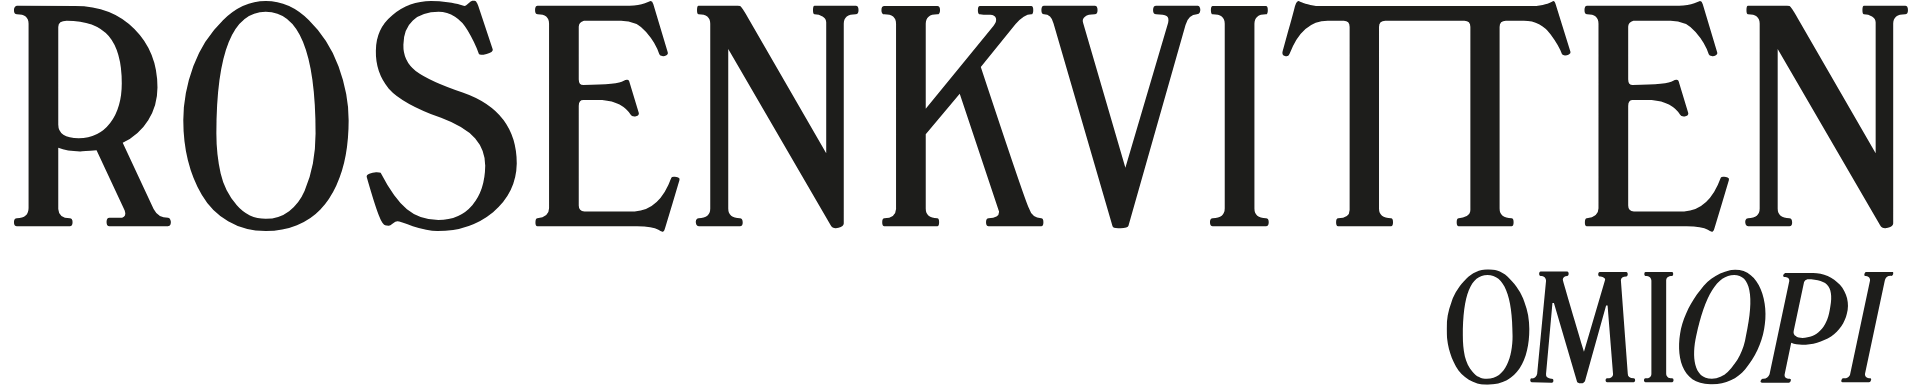 Rosenkvitten logotyp